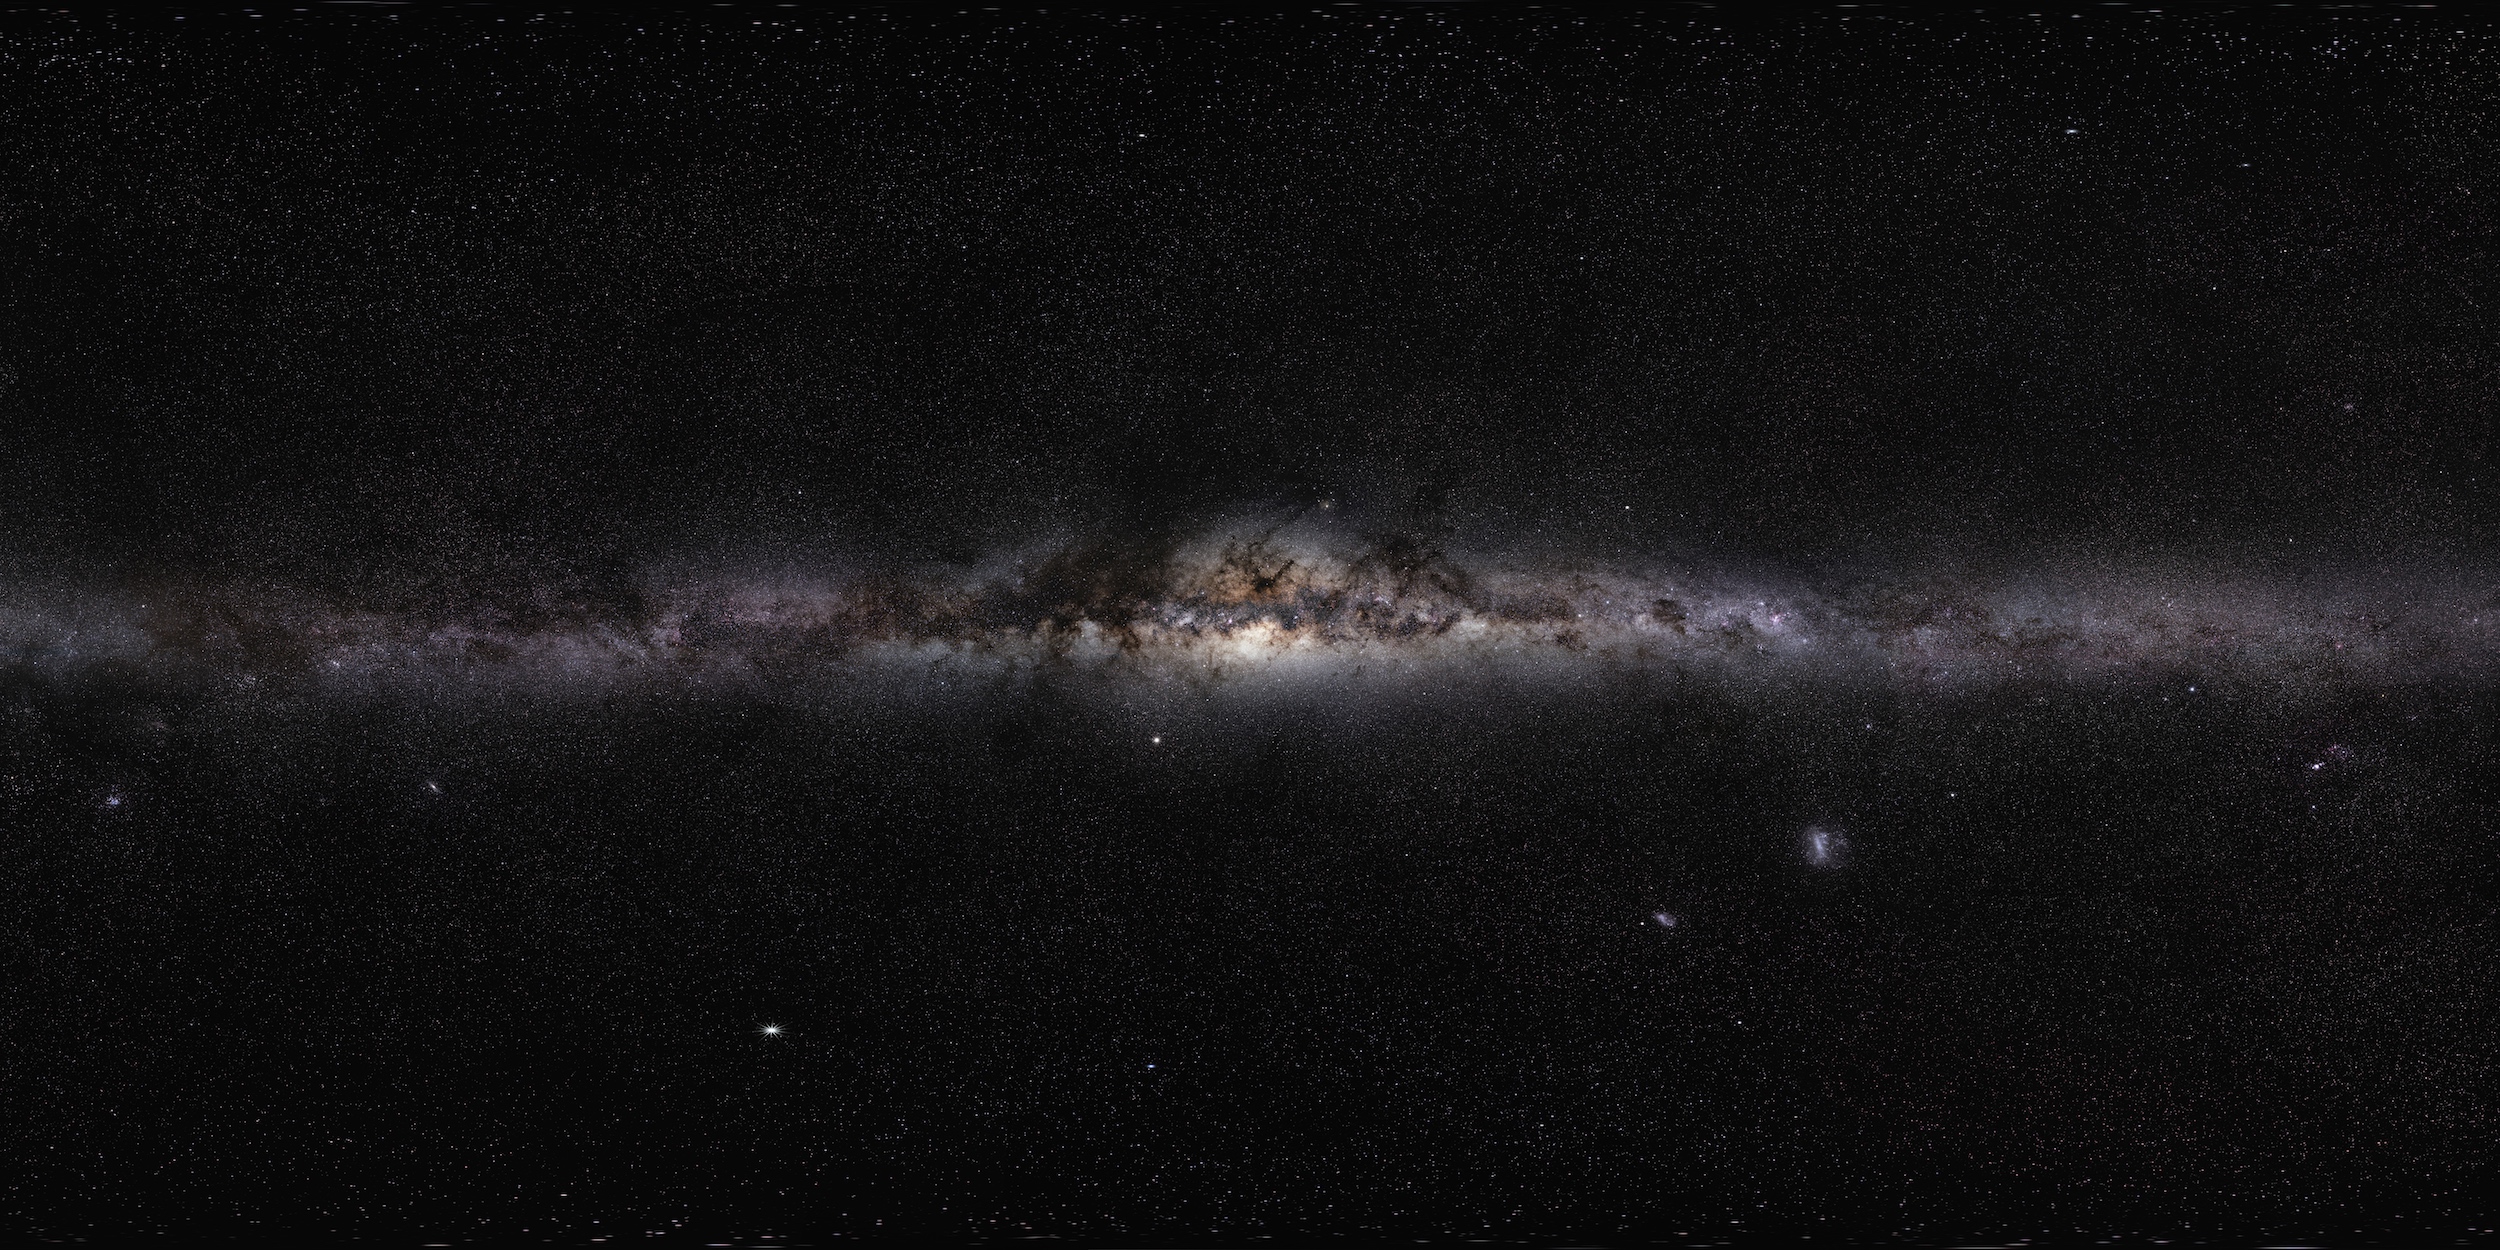 Portrait de notre galaxie. Assemblage de photos de la Voie lactée prises depuis diverses régions du monde. © Serge Brunier